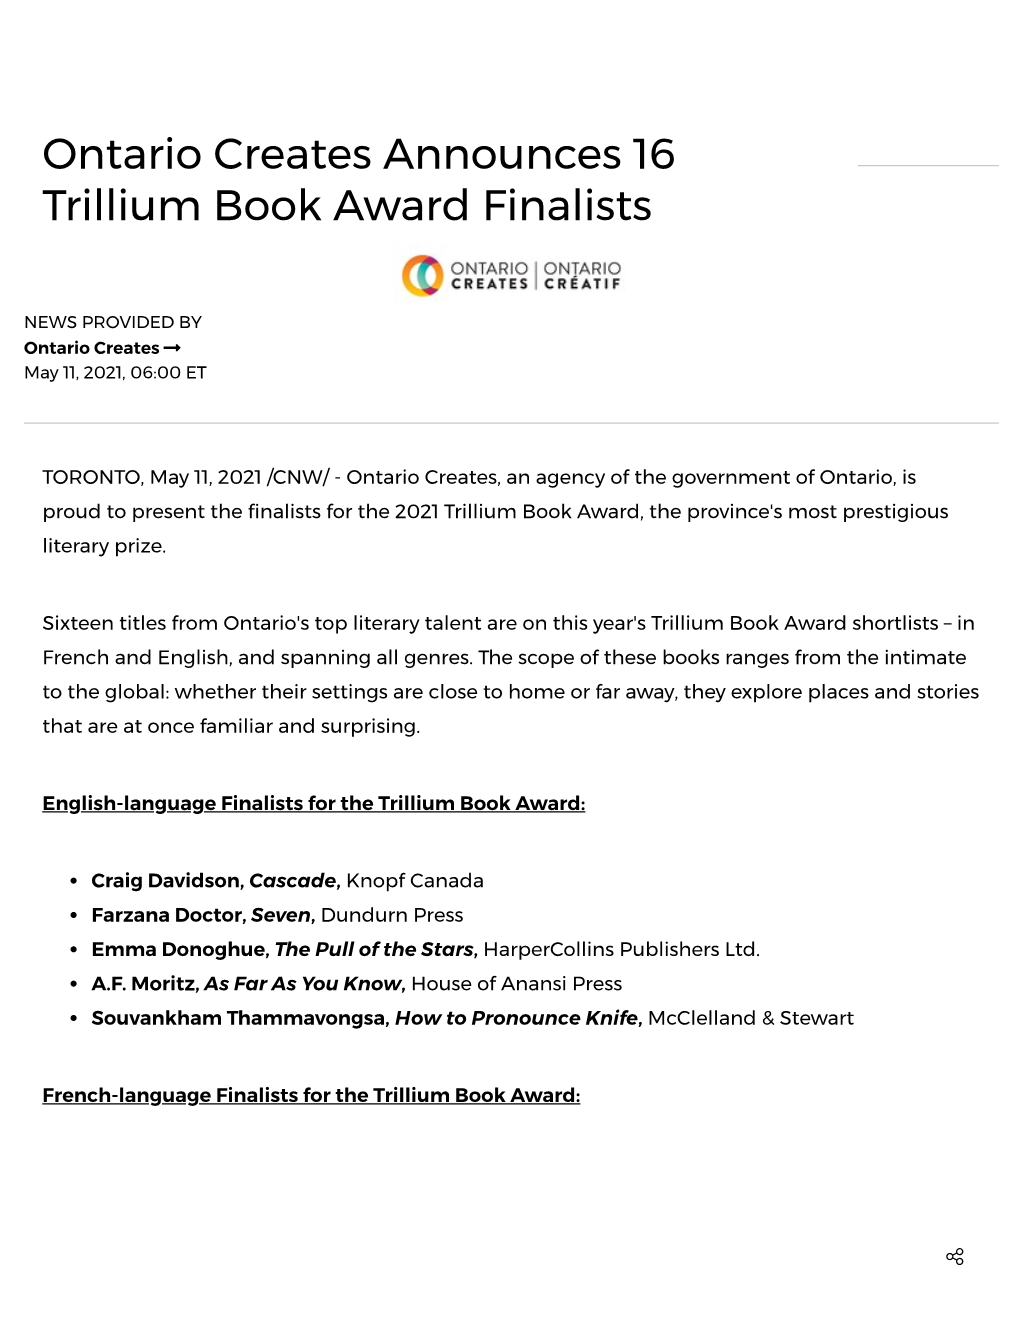 Ontario Creates Announces 16 Trillium Book Award Finalists